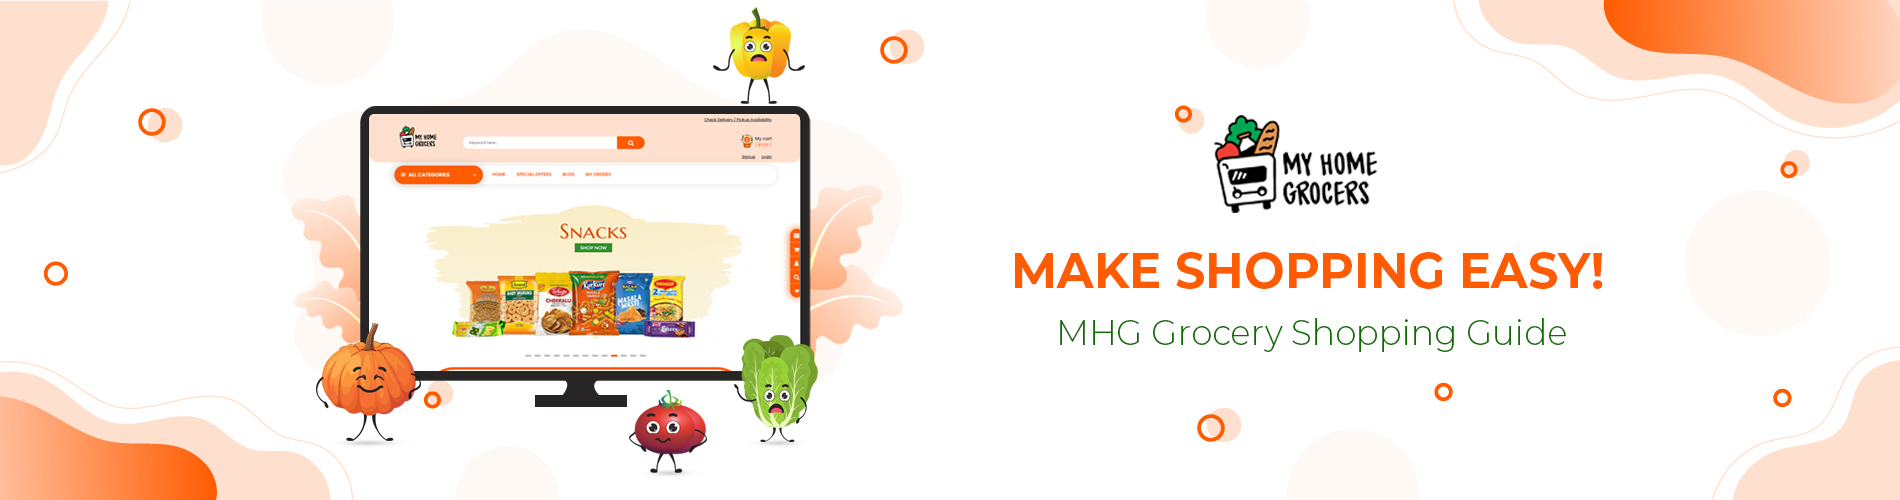 Make shopping easy!- MHG Grocery Shopping Guide